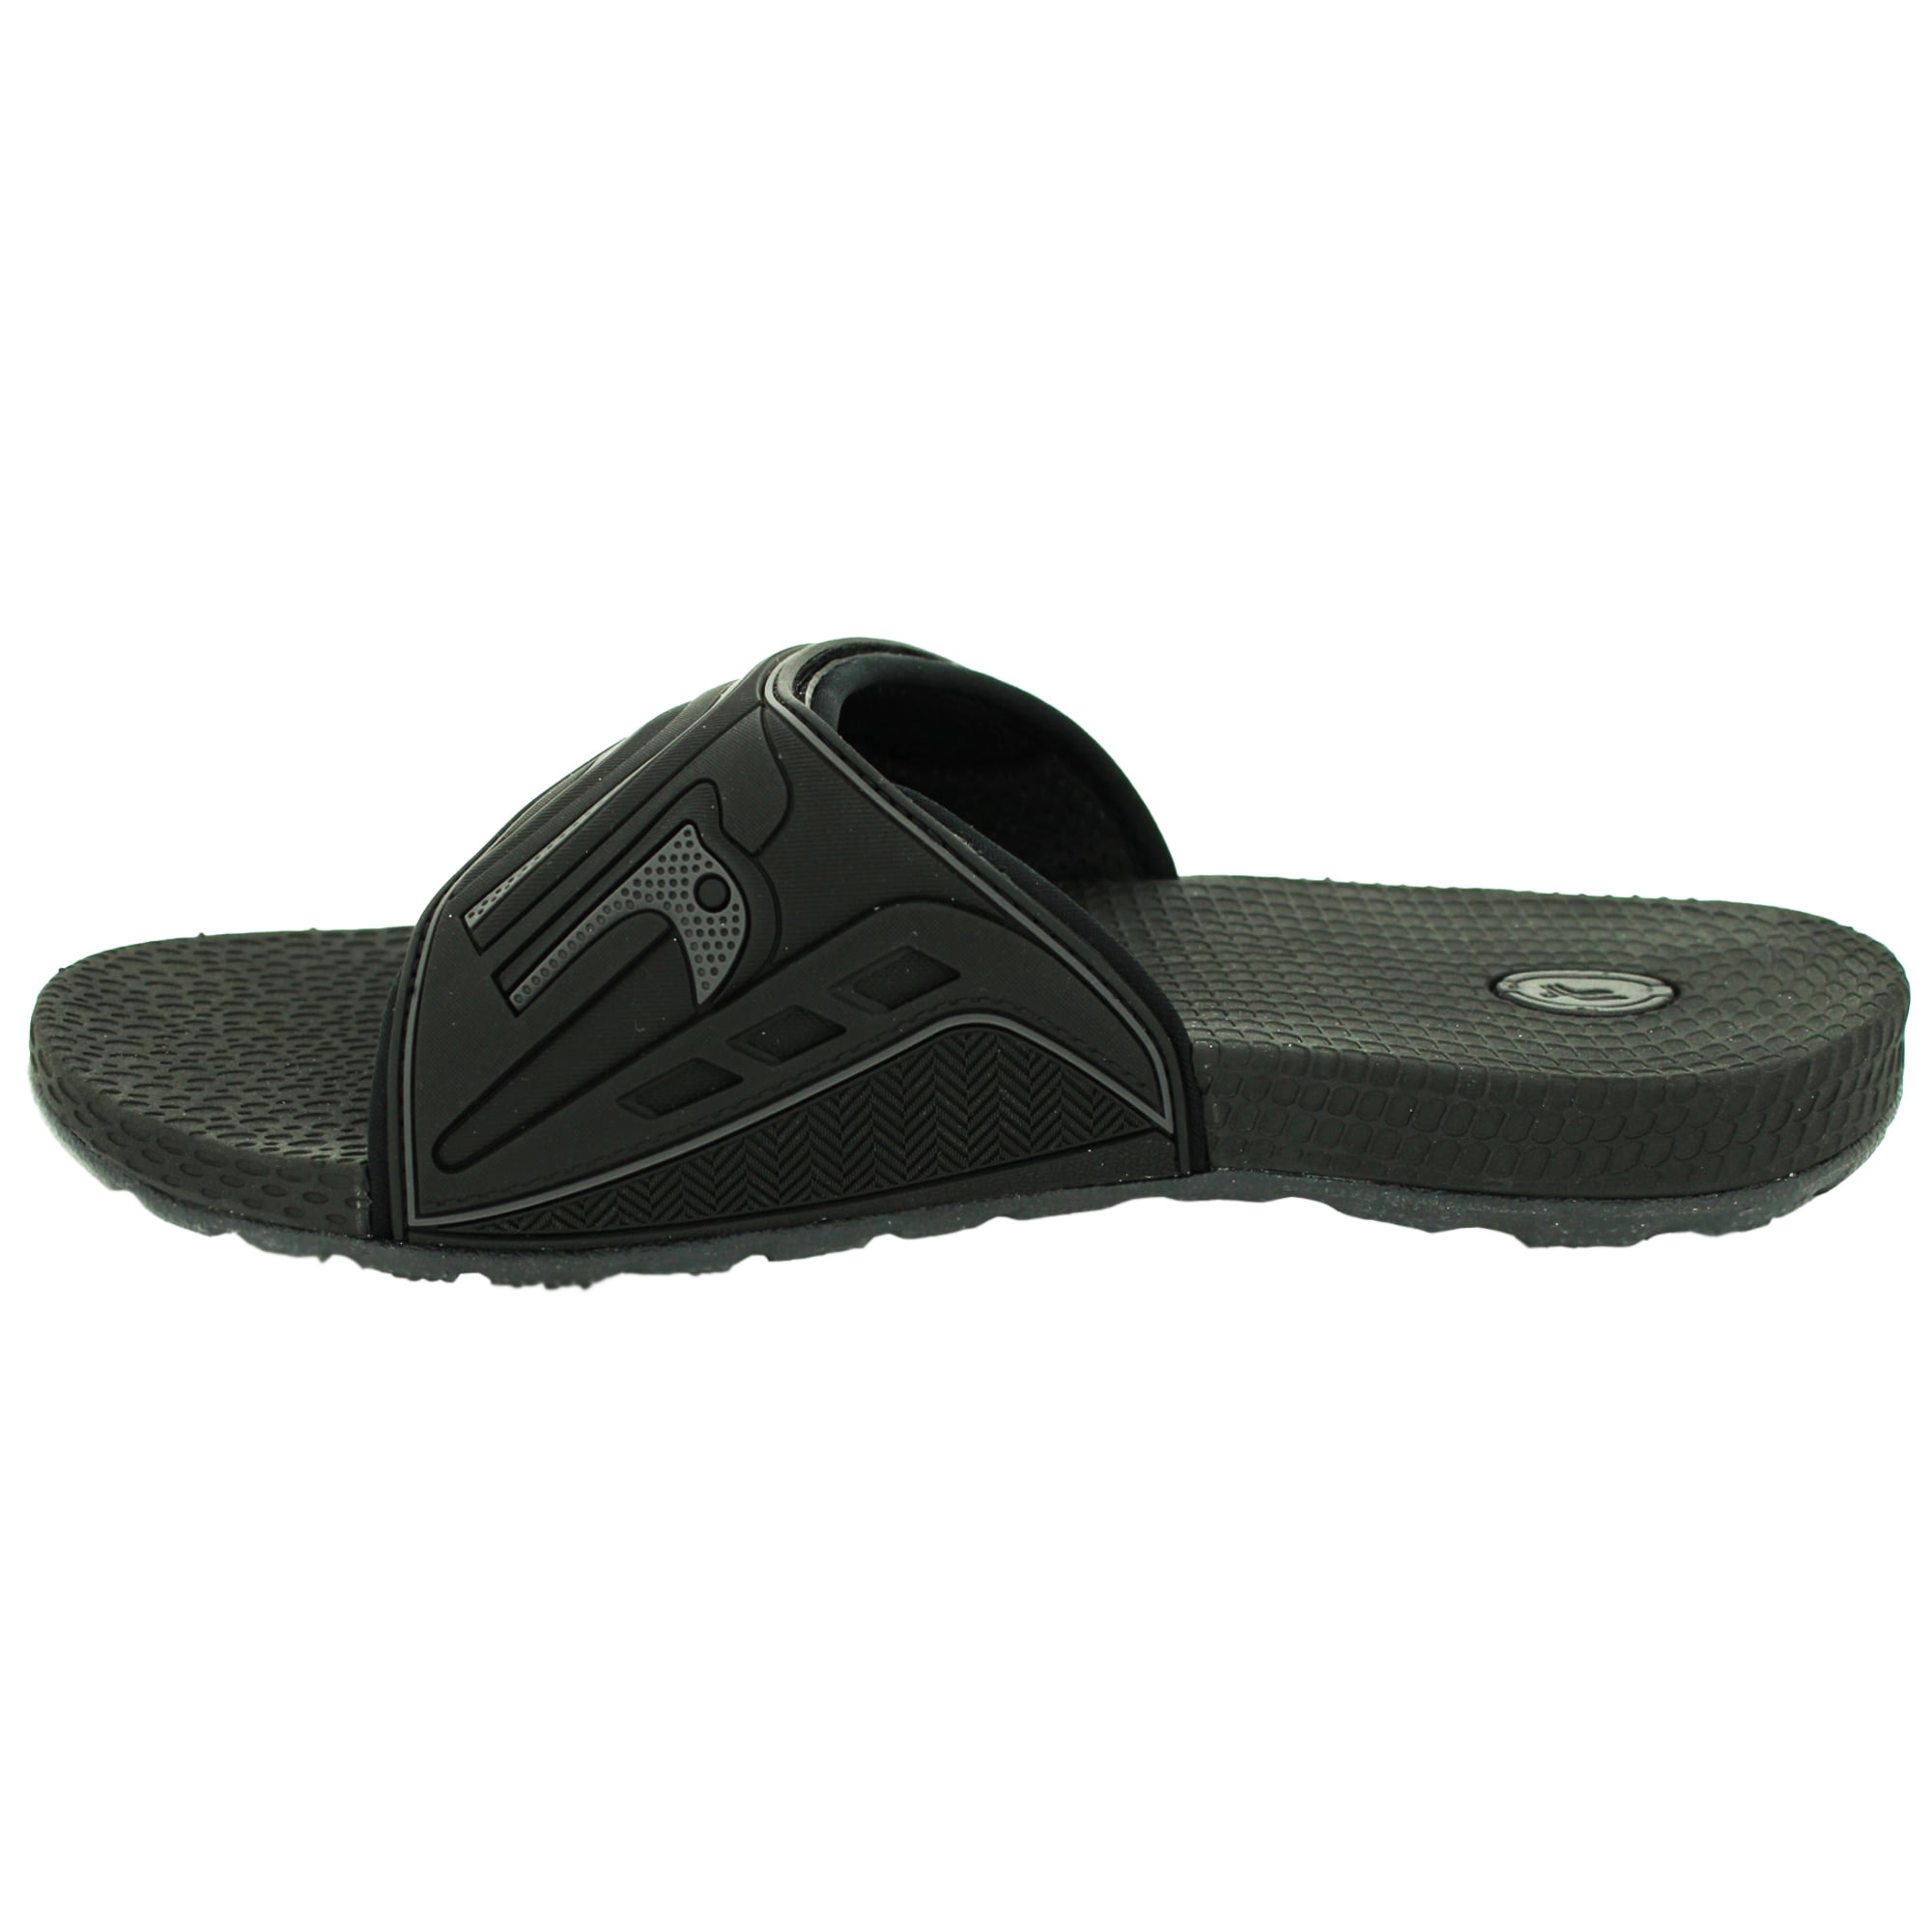 mens slide sandals wide width